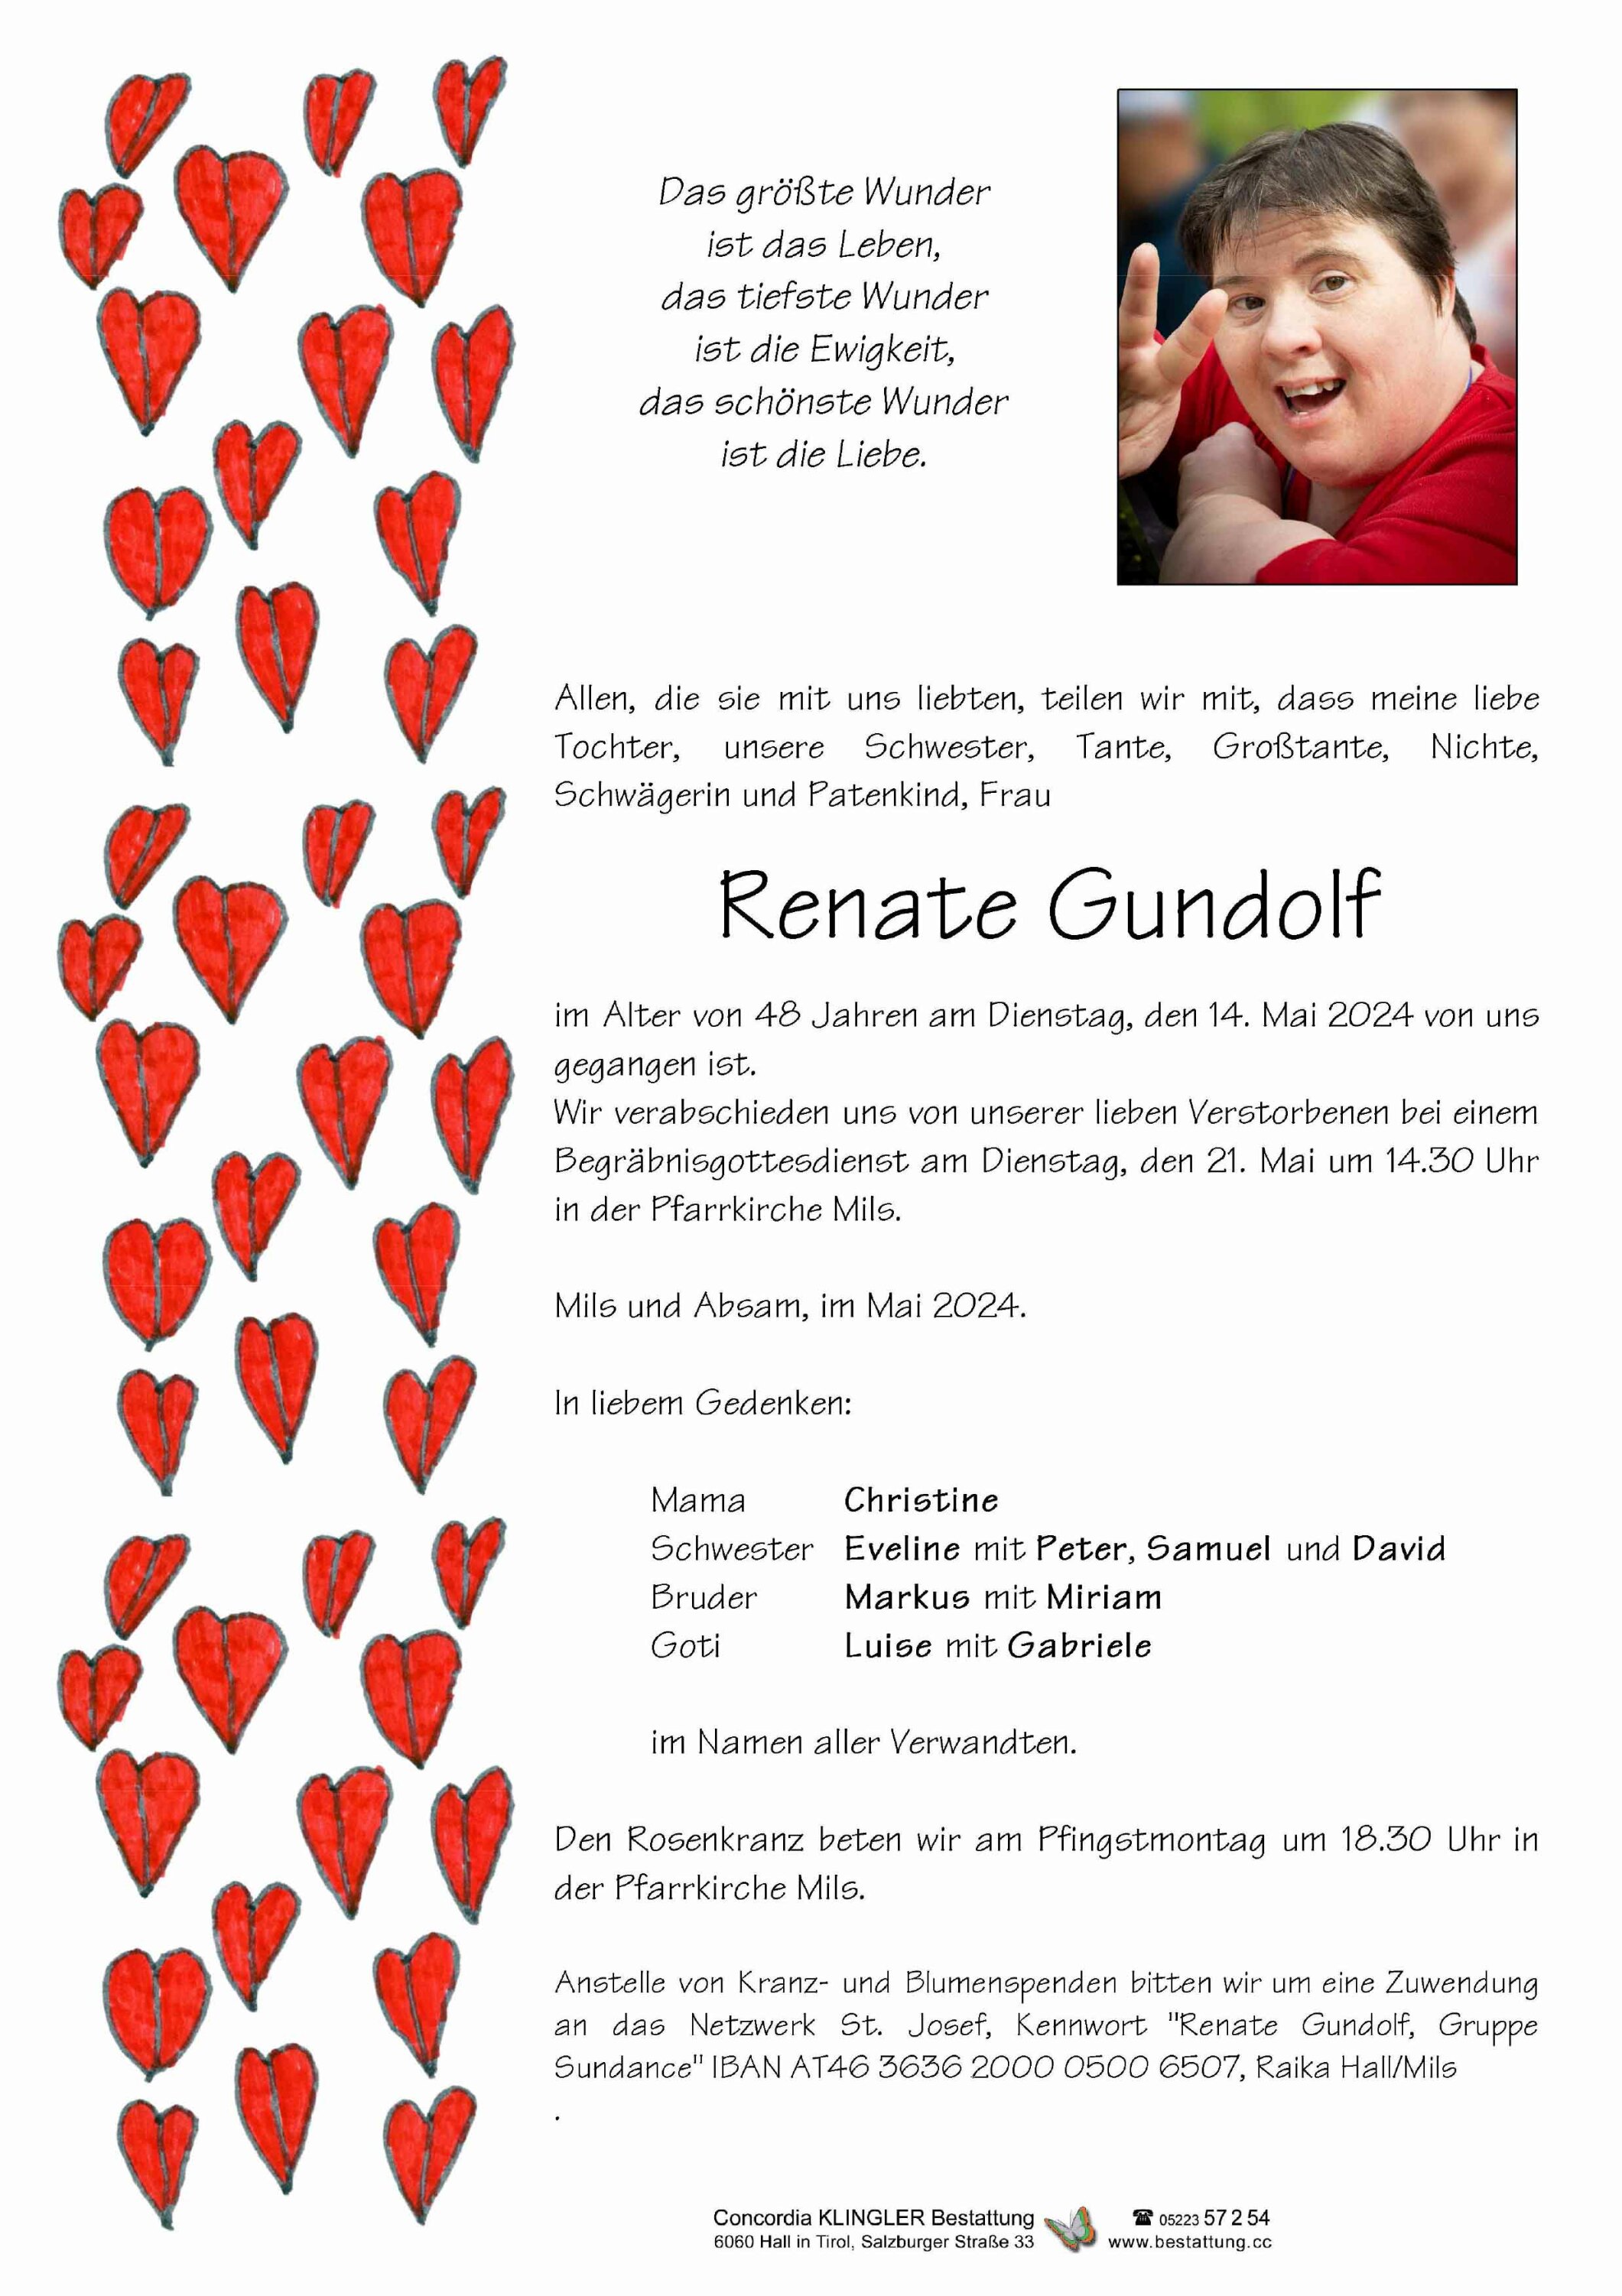 Renate Gundolf